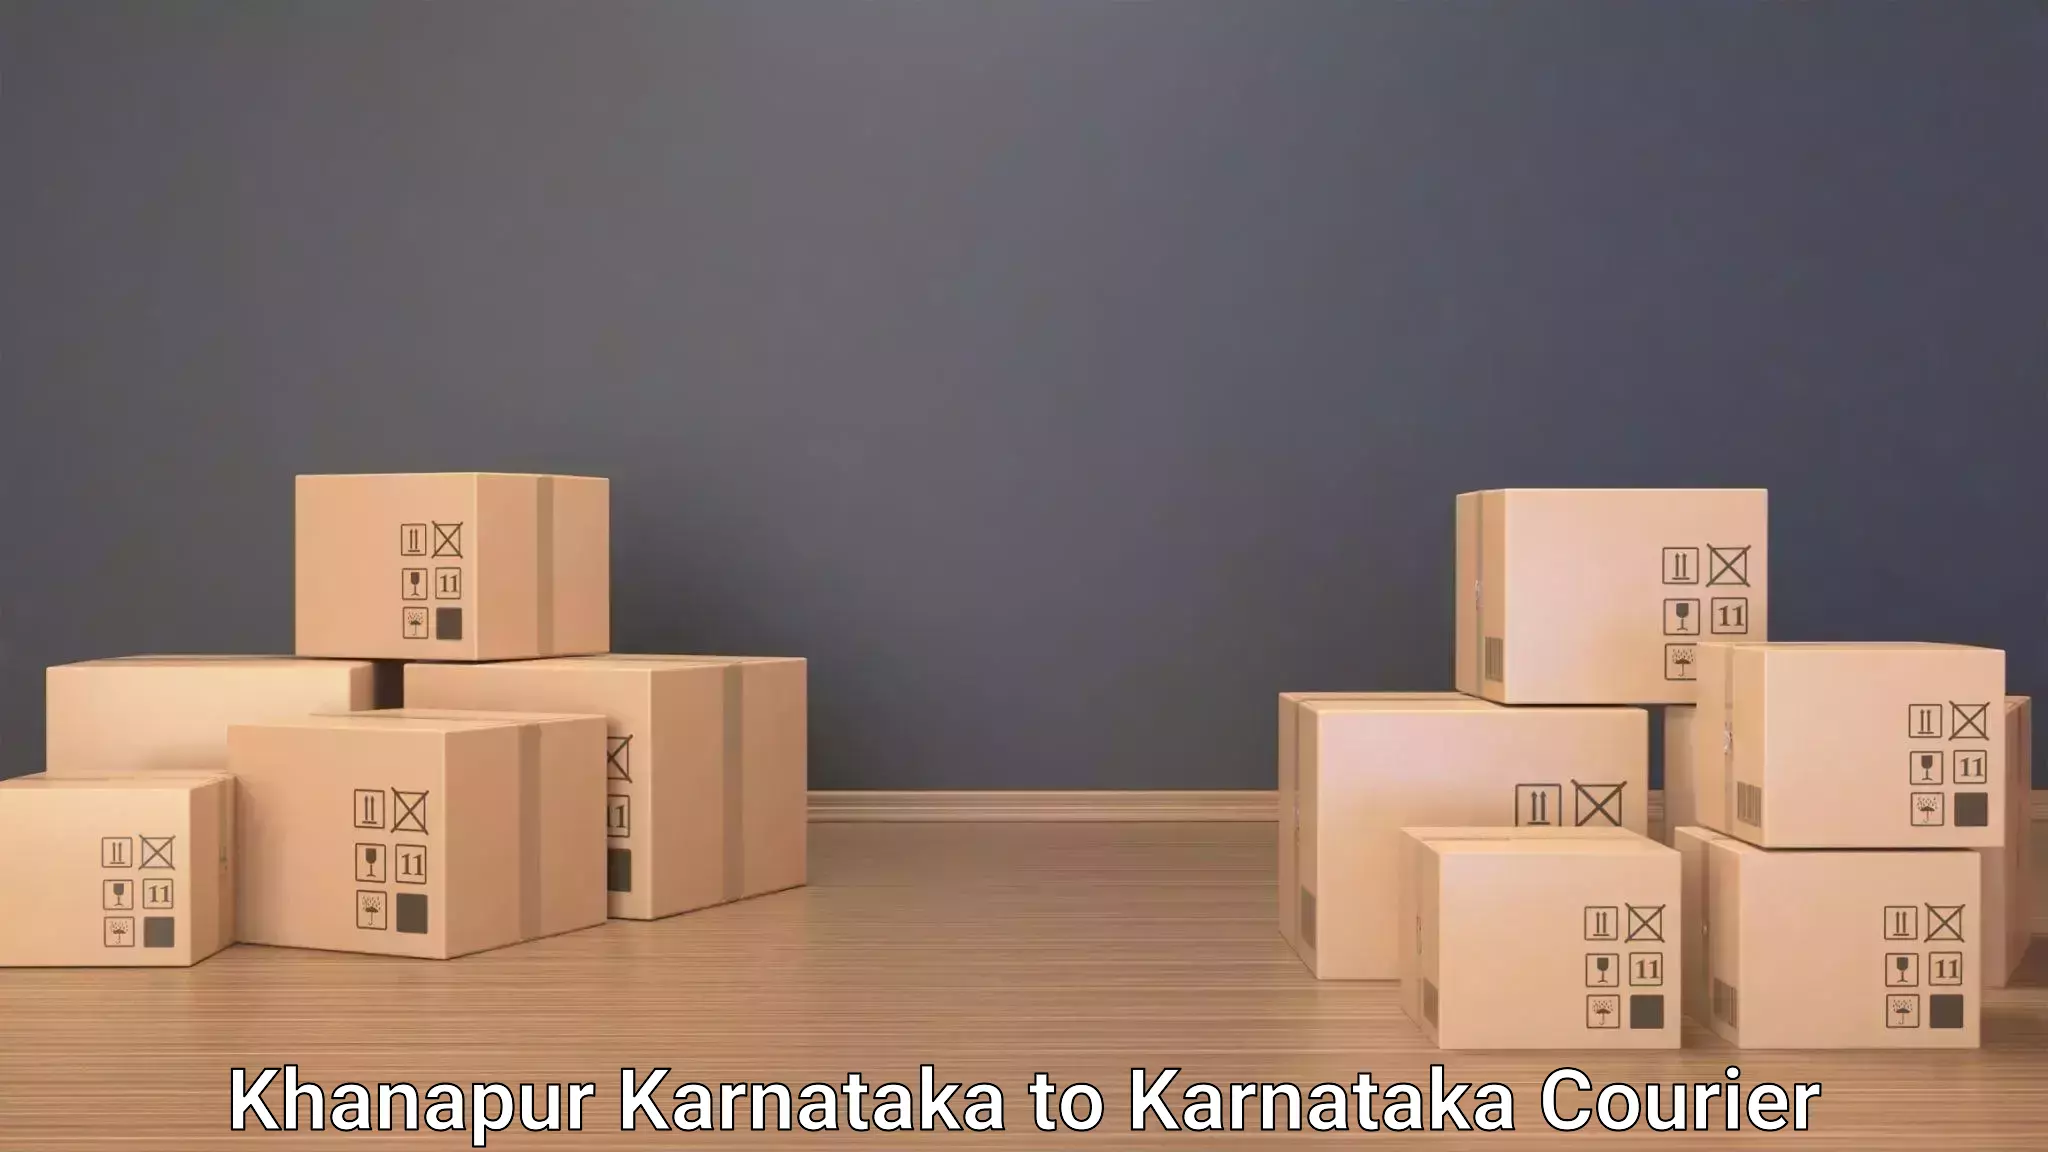 Luggage delivery optimization Khanapur Karnataka to Chikkamagaluru